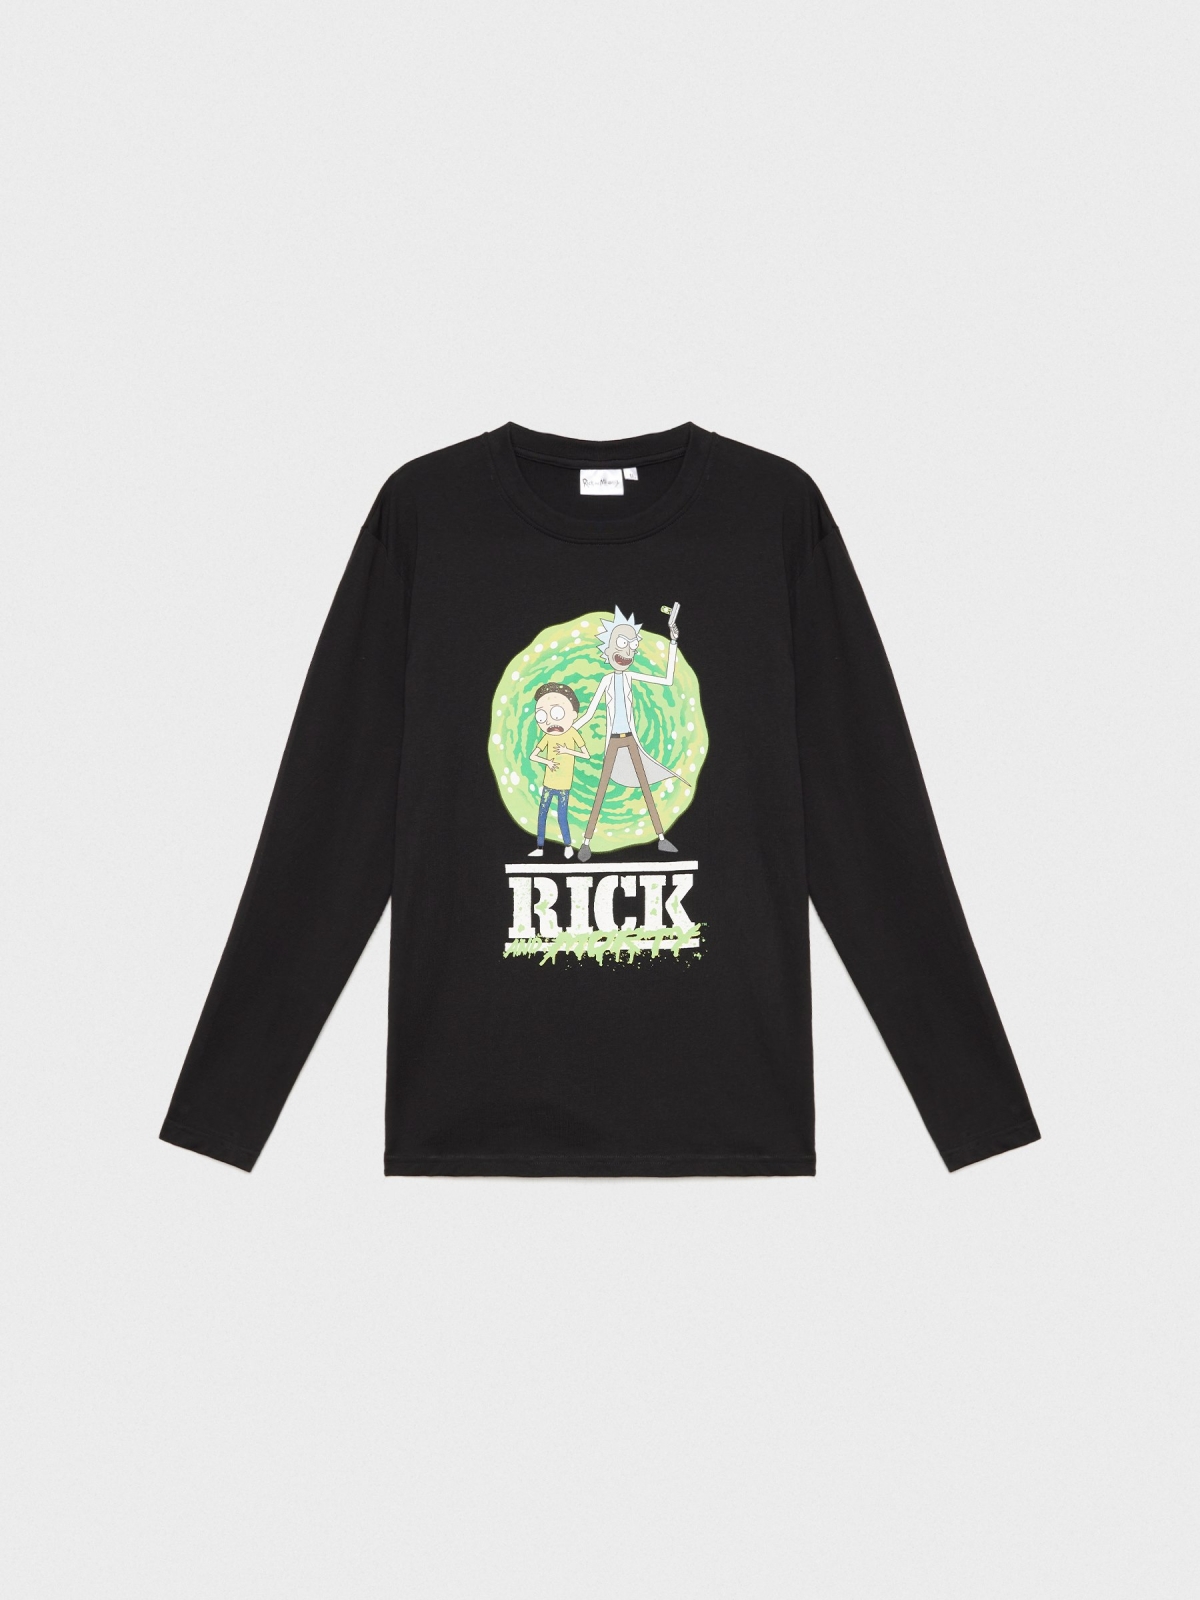  Camiseta Rick&Morty serie negro